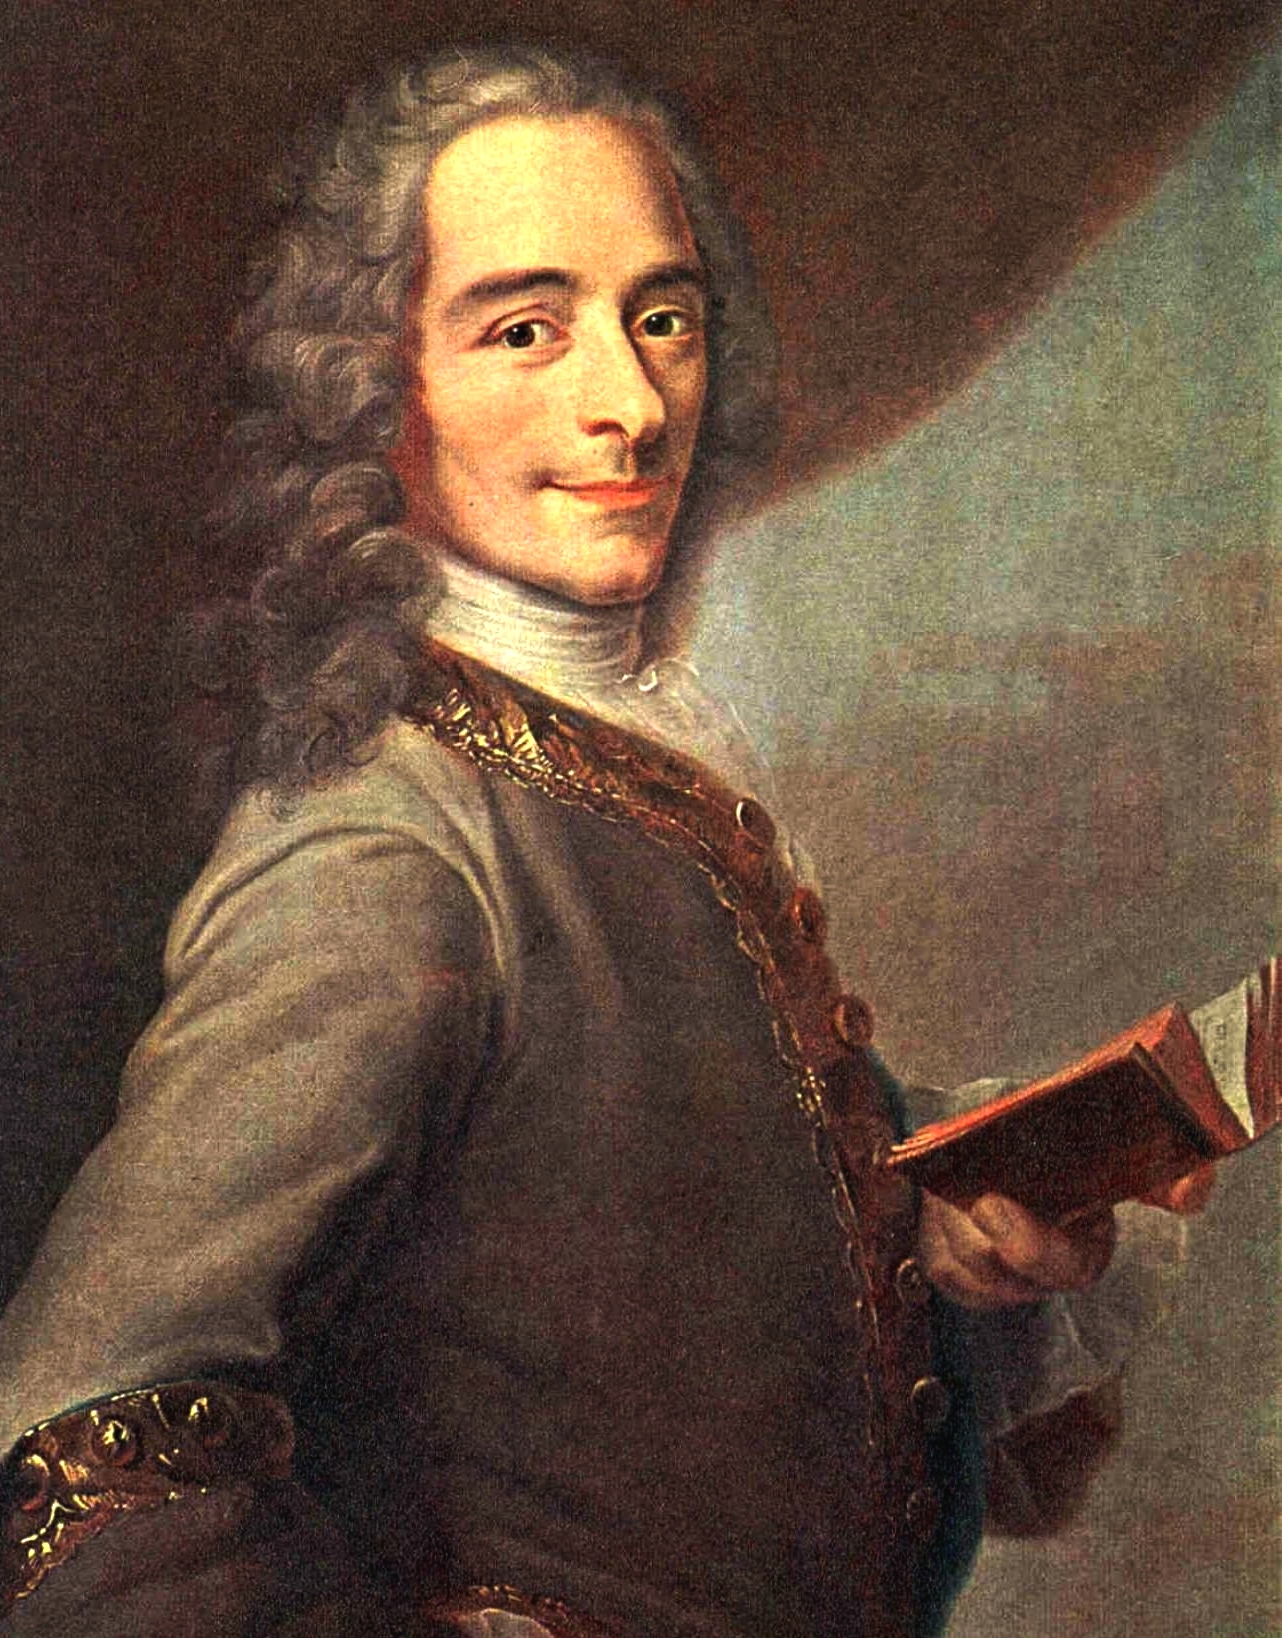 FrançoisMarie Arouet dit Voltaire, histoire et biographie de Voltaire